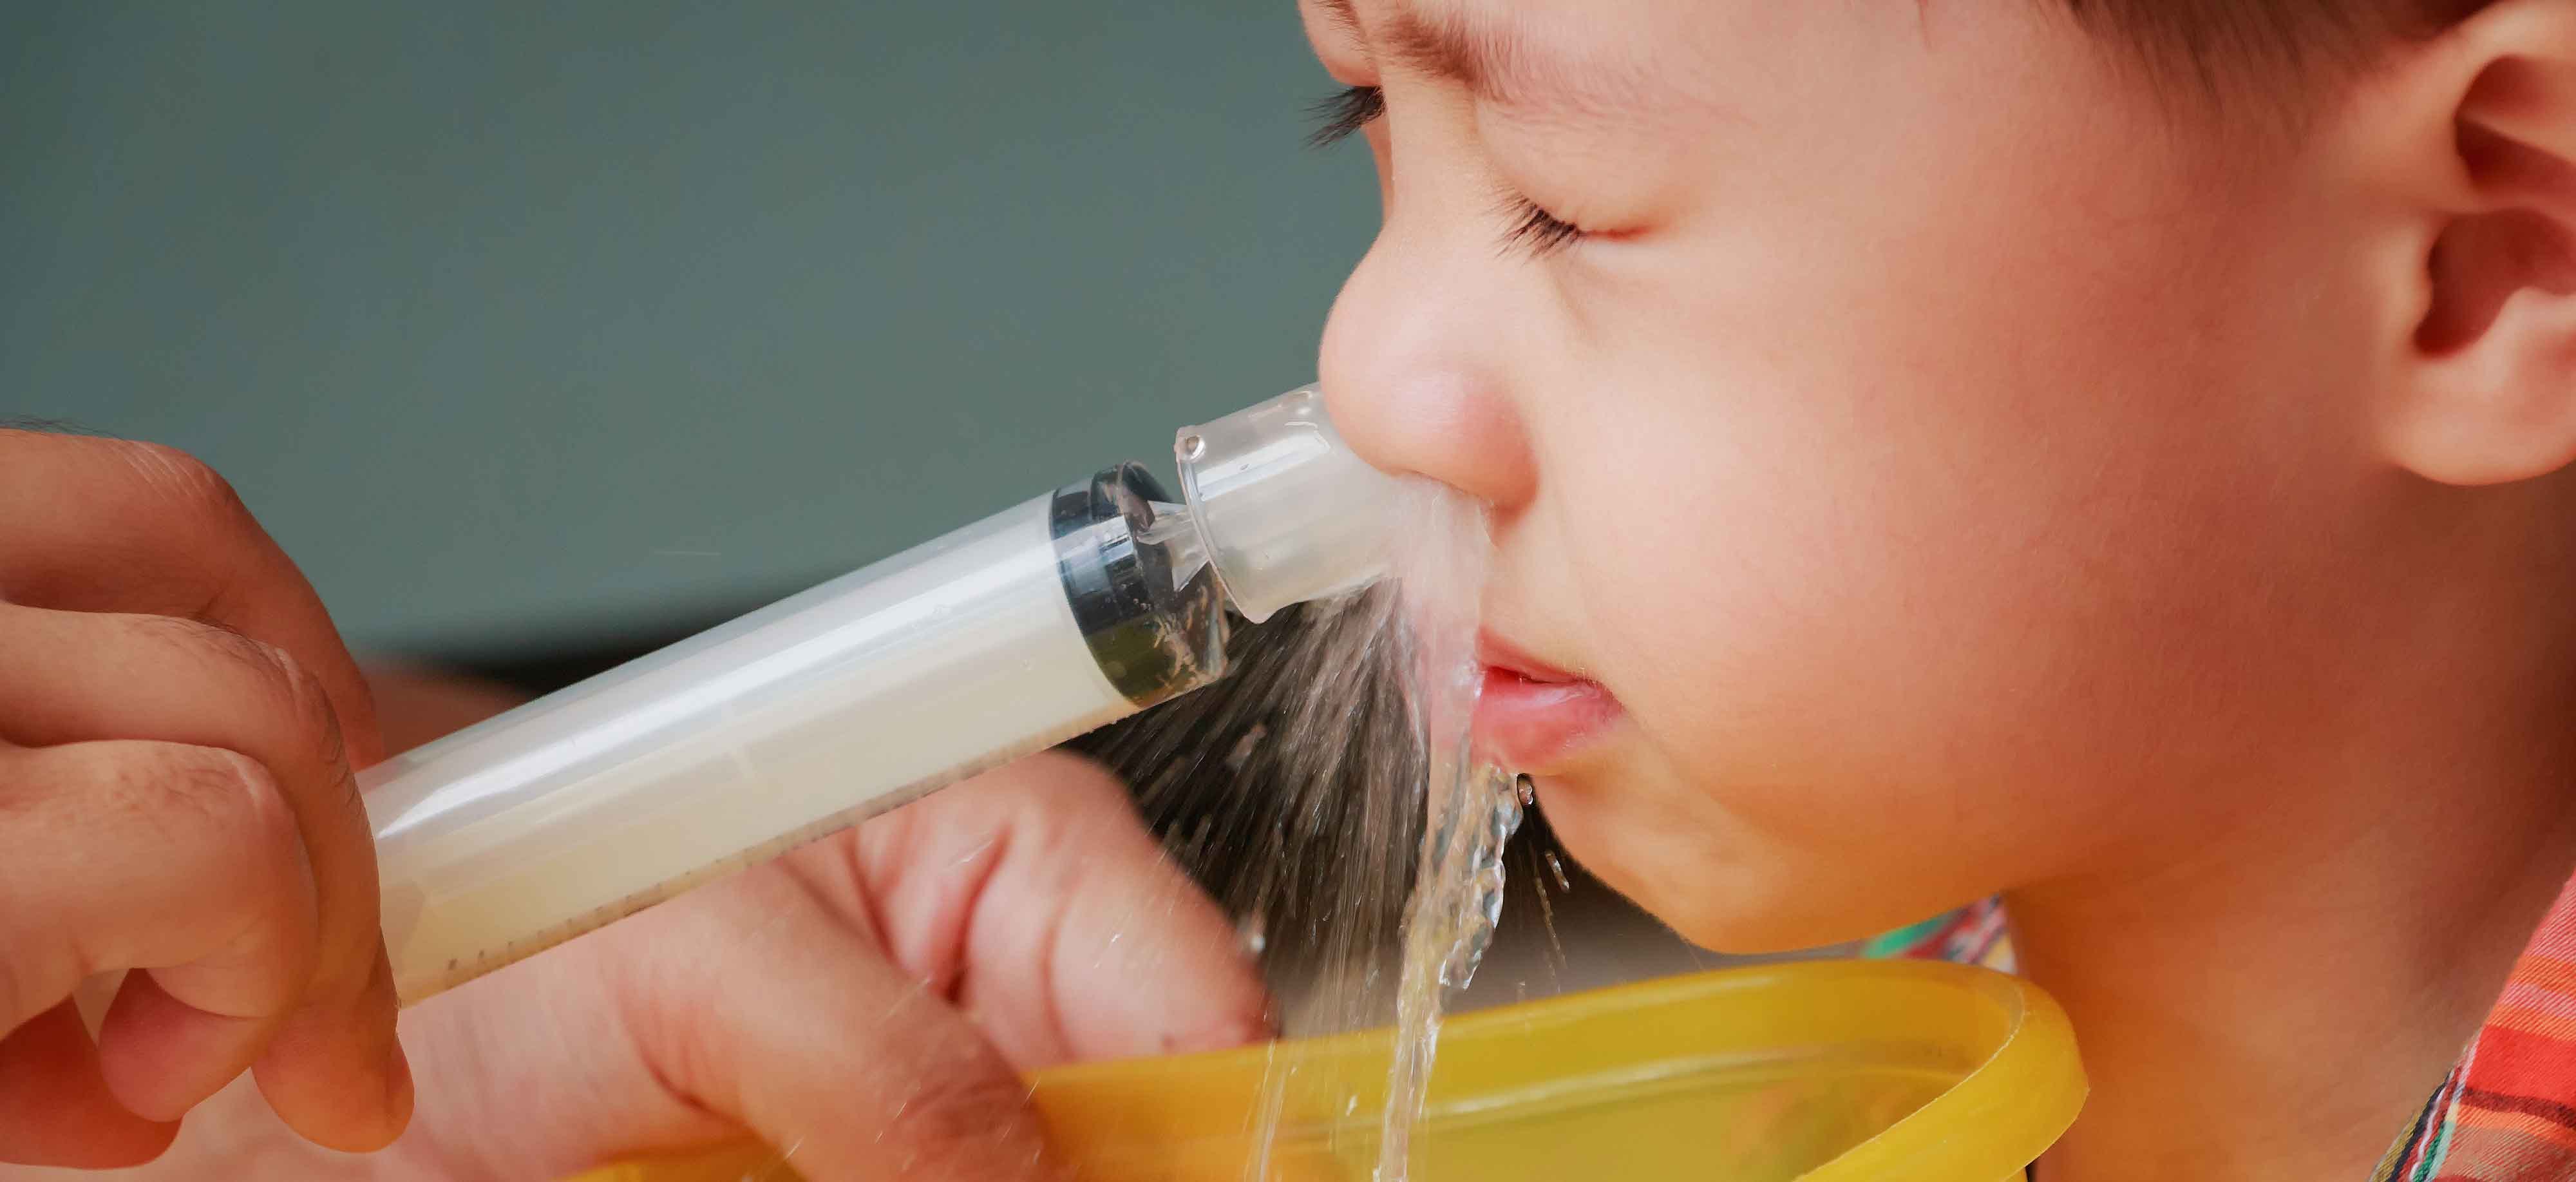 Кукушка нос промывать. Для промывания носа для детей. Кукушка промывание носа детям. Промывать нос детям. Шприц для промывания носа для детей.